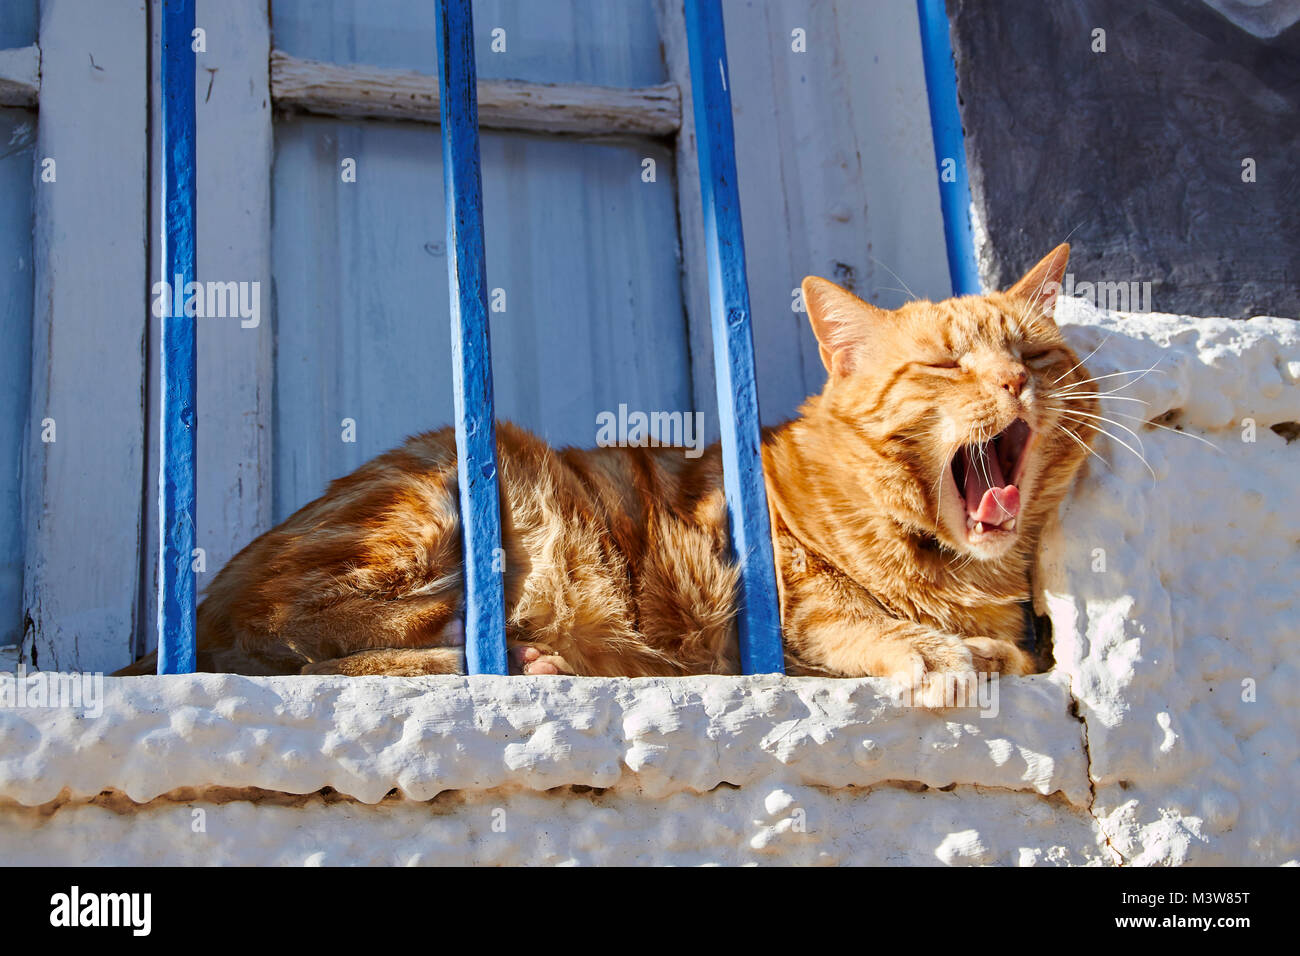 Reddish tabby cat dietro le barre blu su un imbiancato davanzale godendo il sole Foto Stock